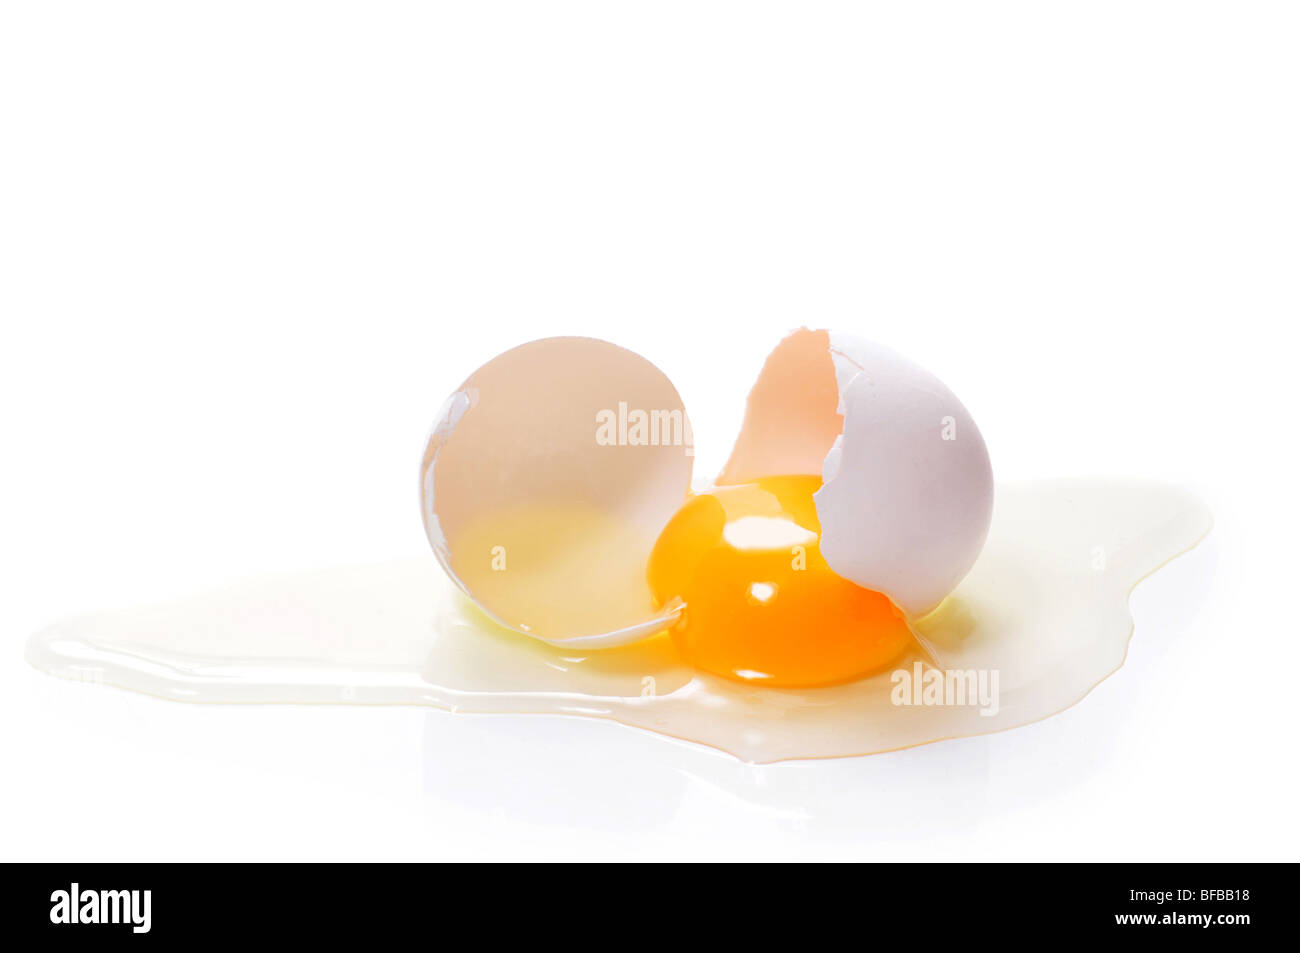 Broken egg on white background Stock Photo